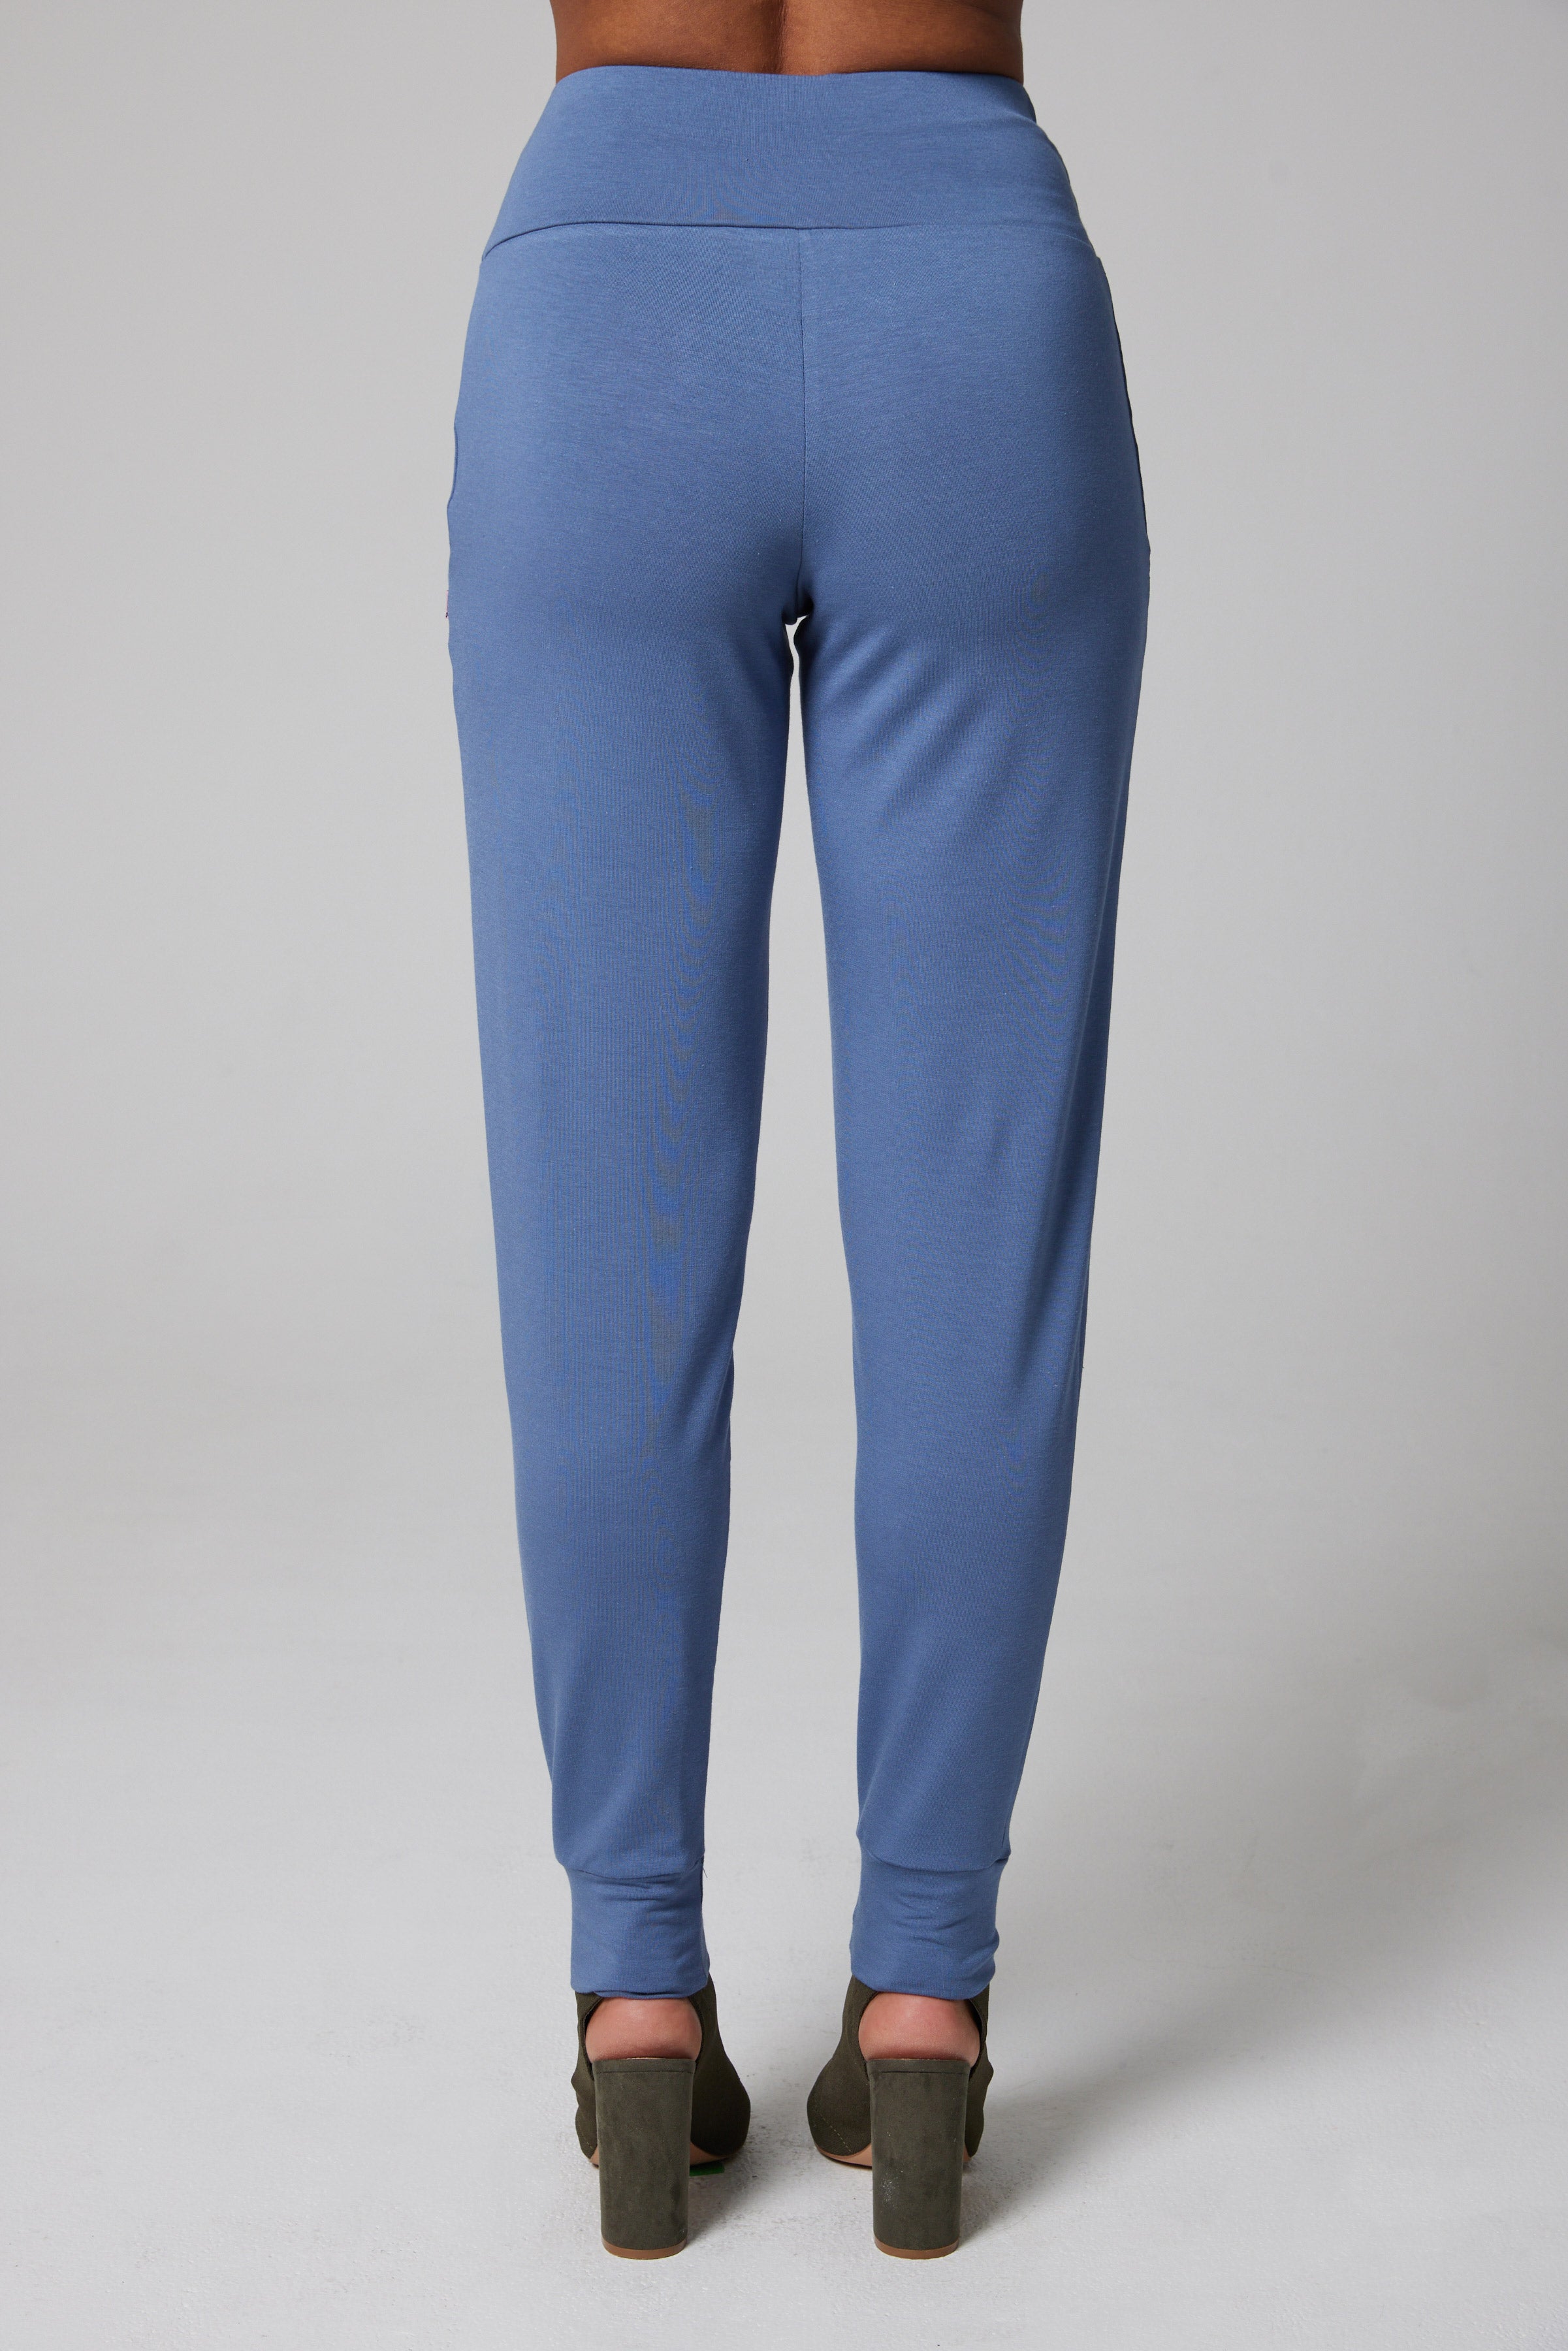 Pantalon de jogging haut de gamme - bambou biologique - Bleu